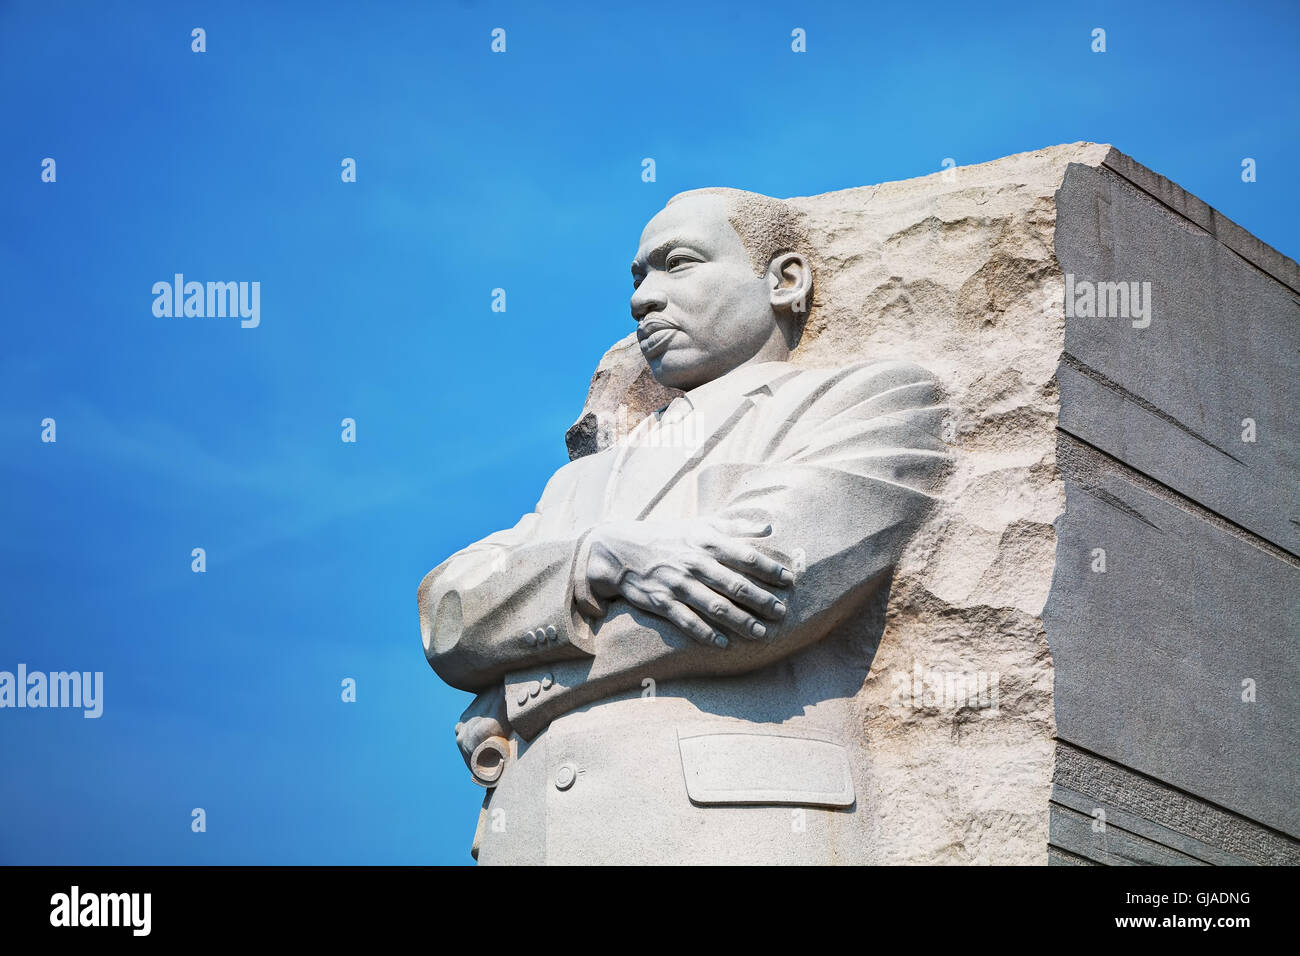 WASHINGTON, DC - 2 SEPTEMBRE : Martin Luther King Jr, monument commémoratif le 2 septembre 2015 à Washington, DC. Banque D'Images